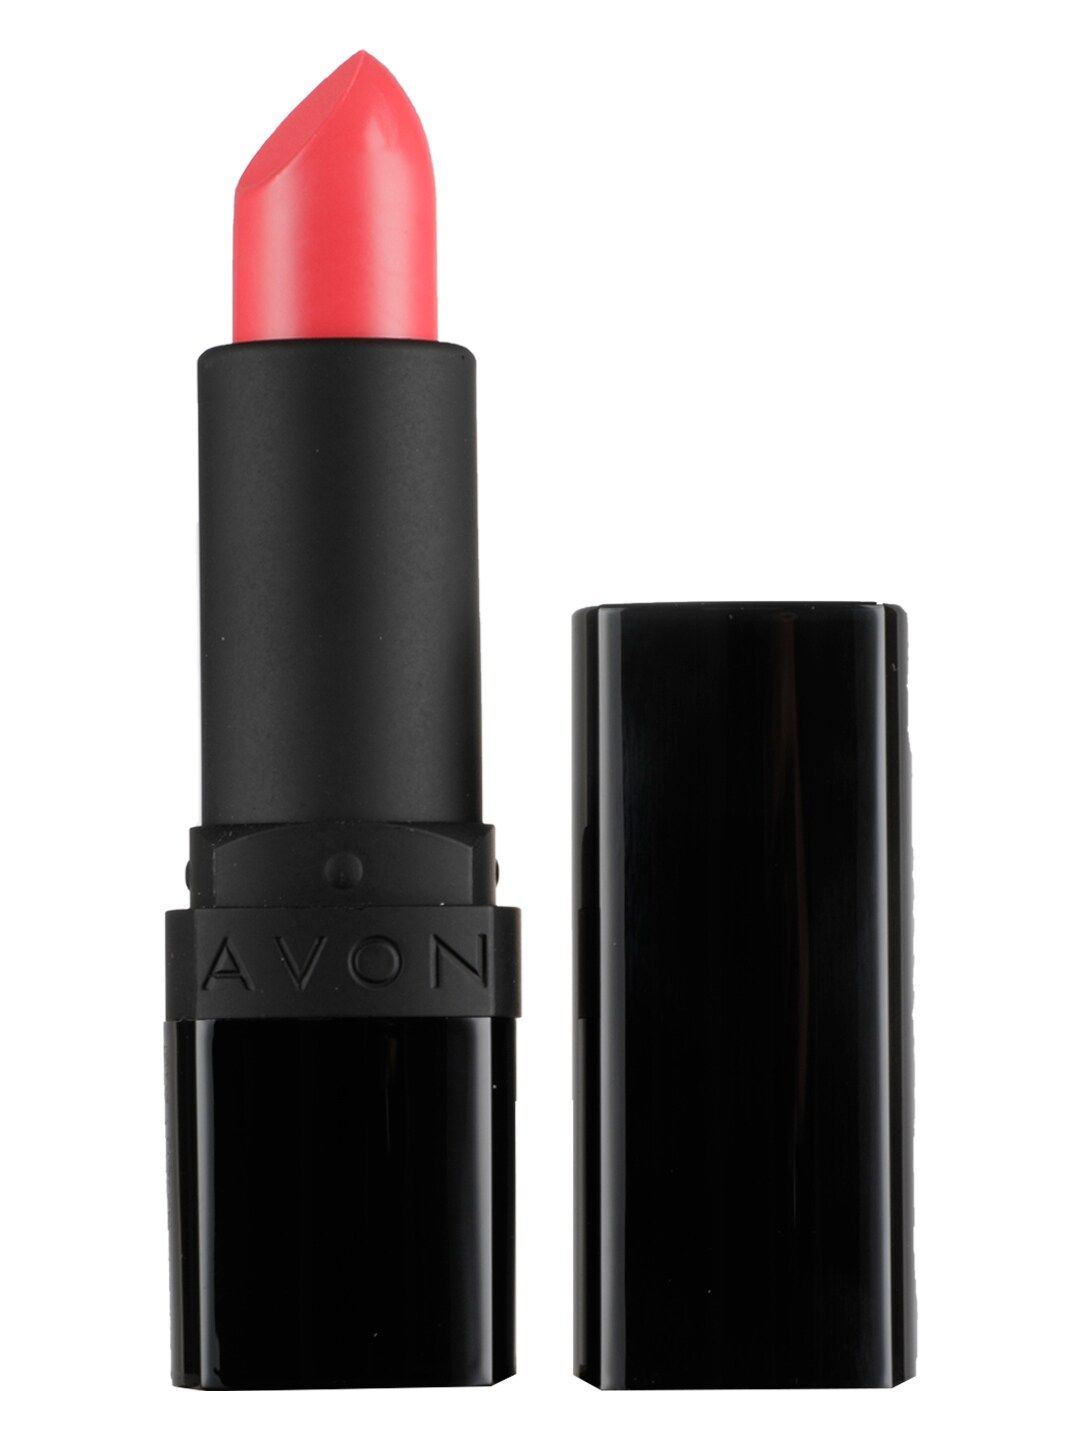 Avon True Color Perfectly Matte Lipstick - Vibrant Melon Price in India